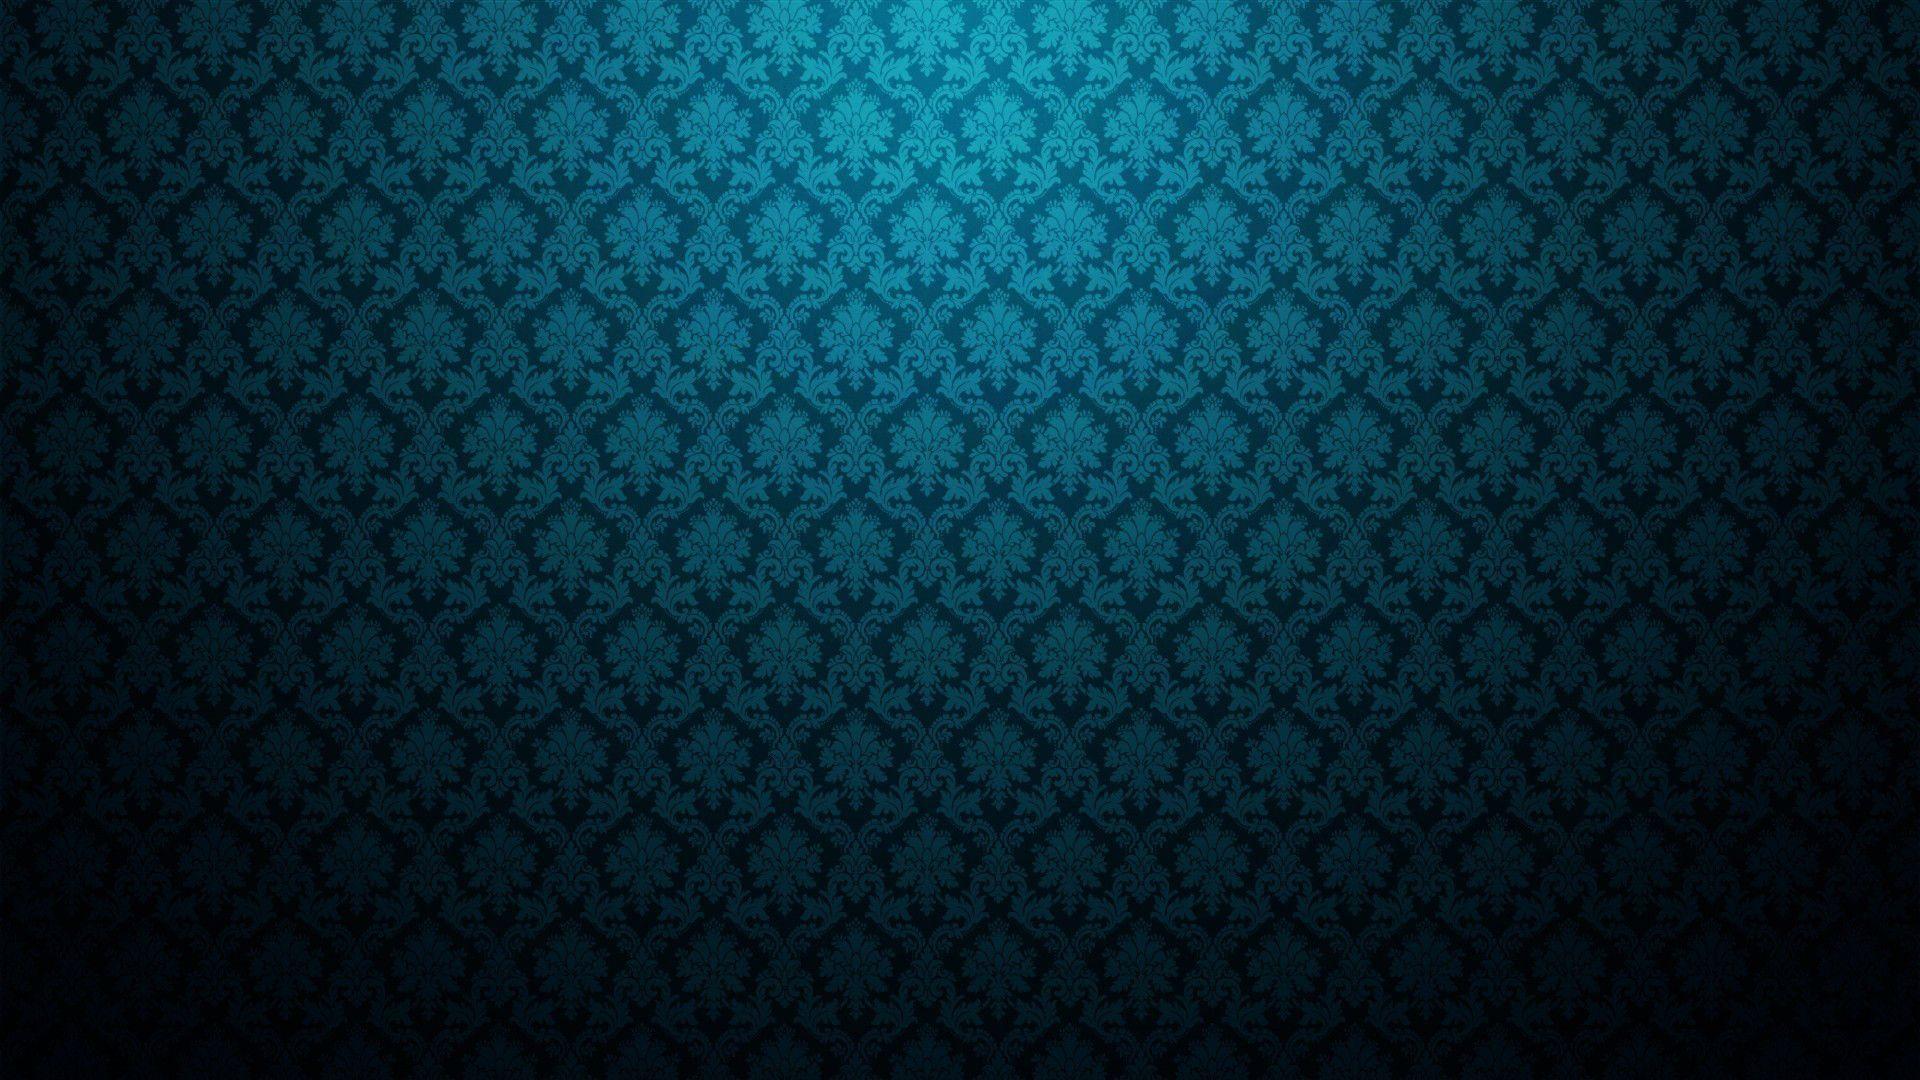 Abstract Desktop Wallpaper 1920x1080. High Definition Wallpaper